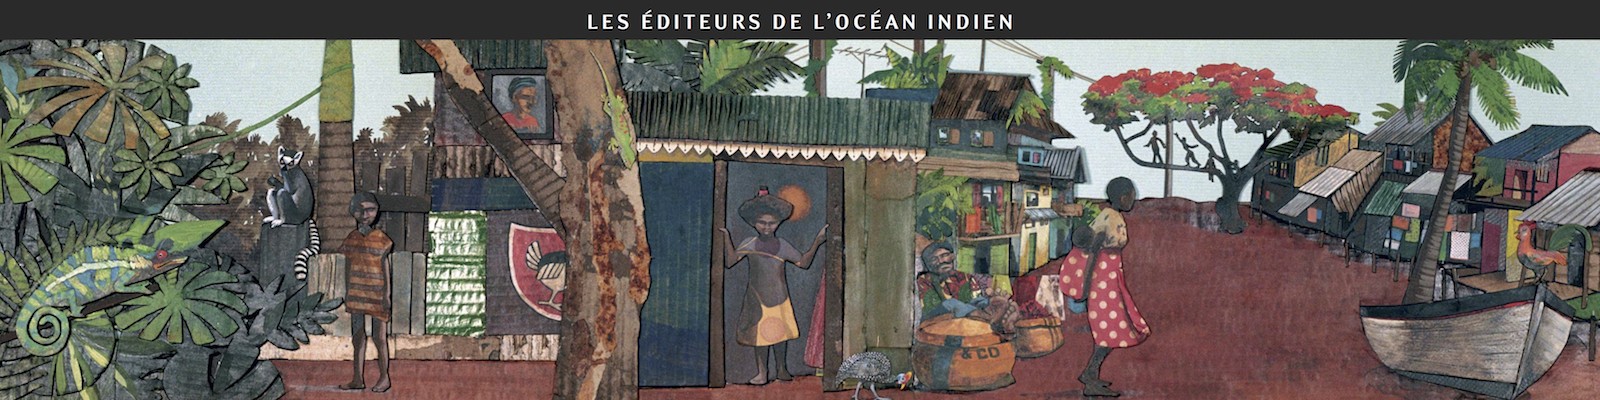 Les éditeurs de l'océan Indien au Festival international de la bande dessinée d'Angoulême 2012 - Dessin d'Aurélia Moynot